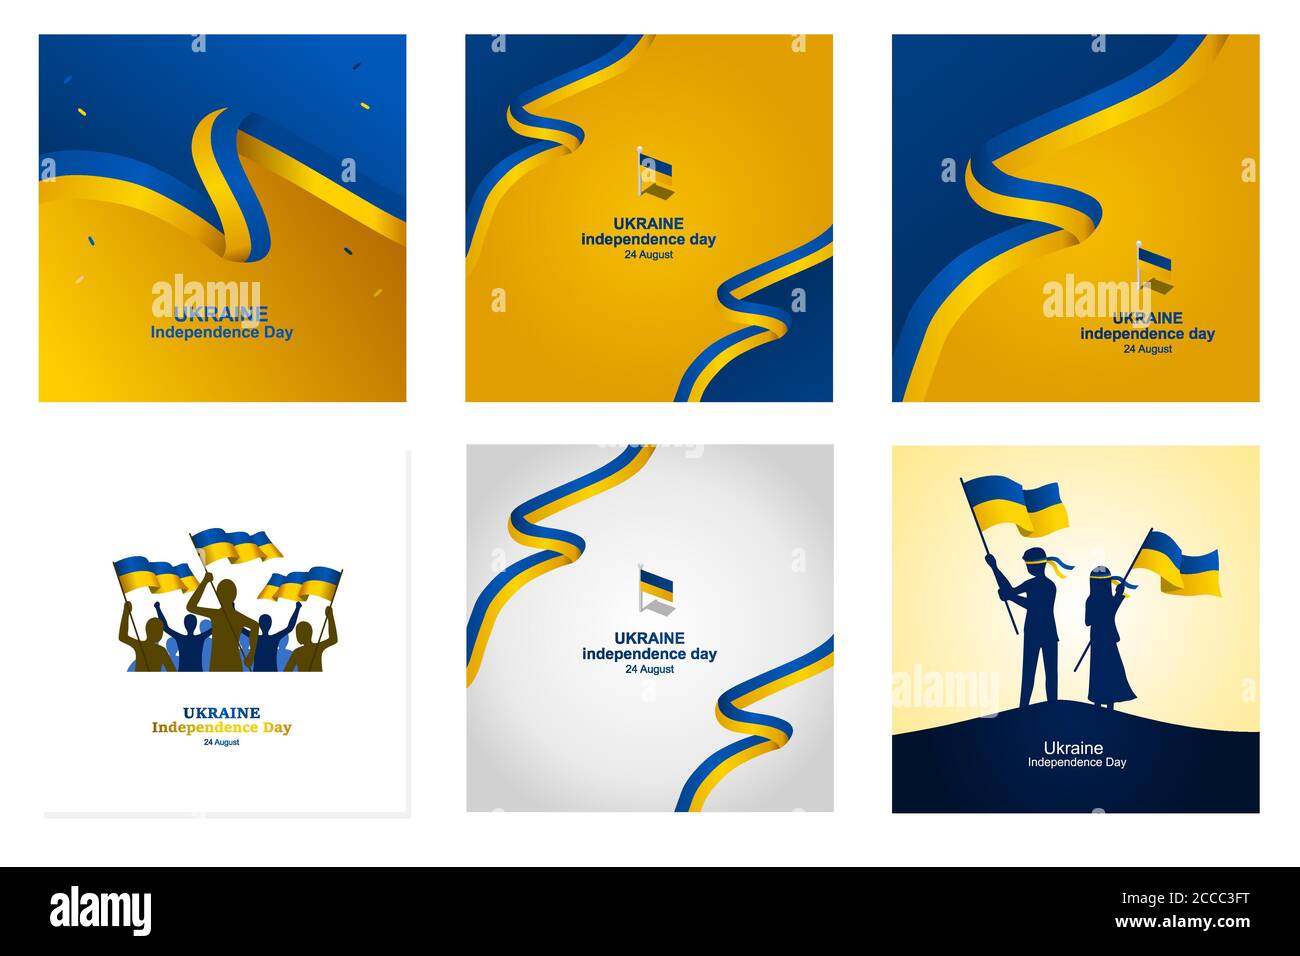 ukraine Unabhängigkeitstag Postersammlung, um den wichtigen Tag der Ukraine am 24. August zu begrüßen, zusätzliche Größe umfassen Schicht für Schicht, relevant für große p Stock Vektor